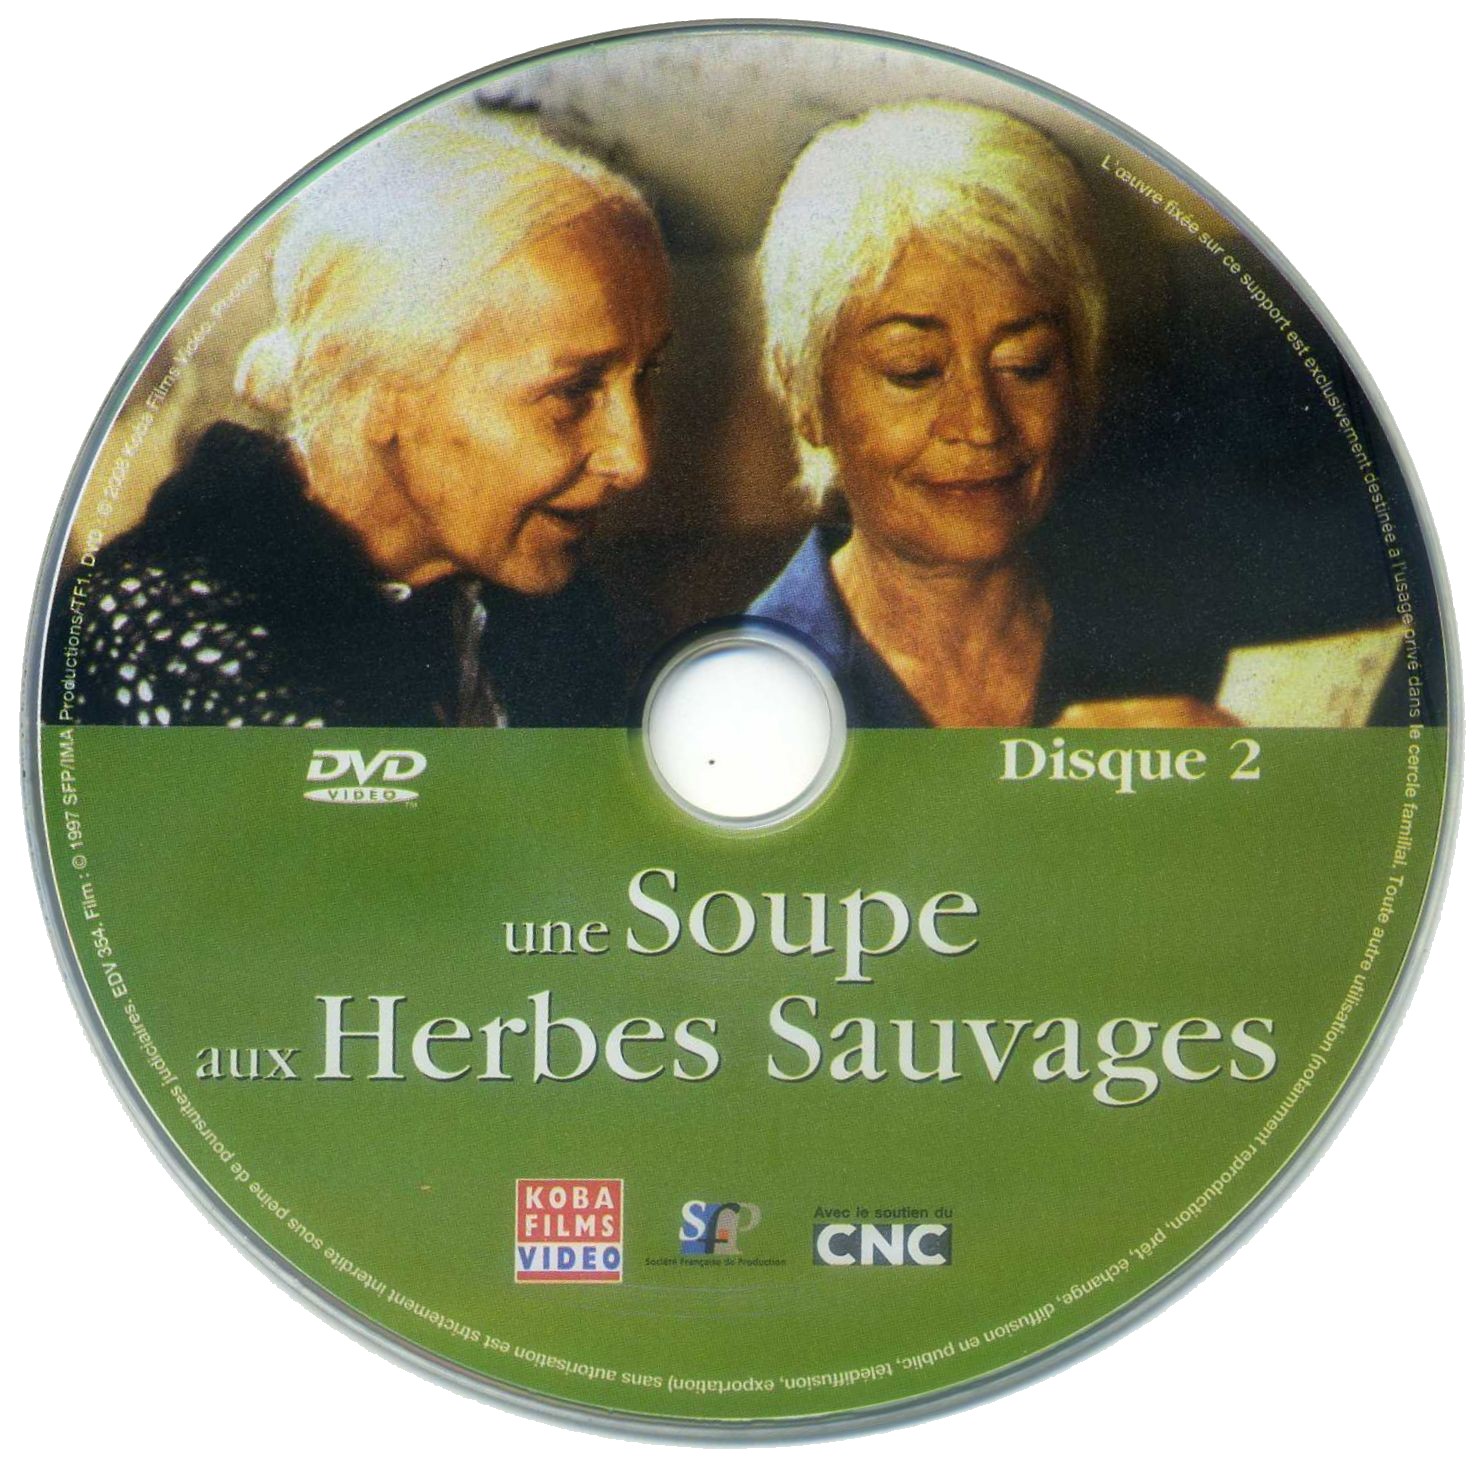 Une soupe aux herbes sauvages DISC 2